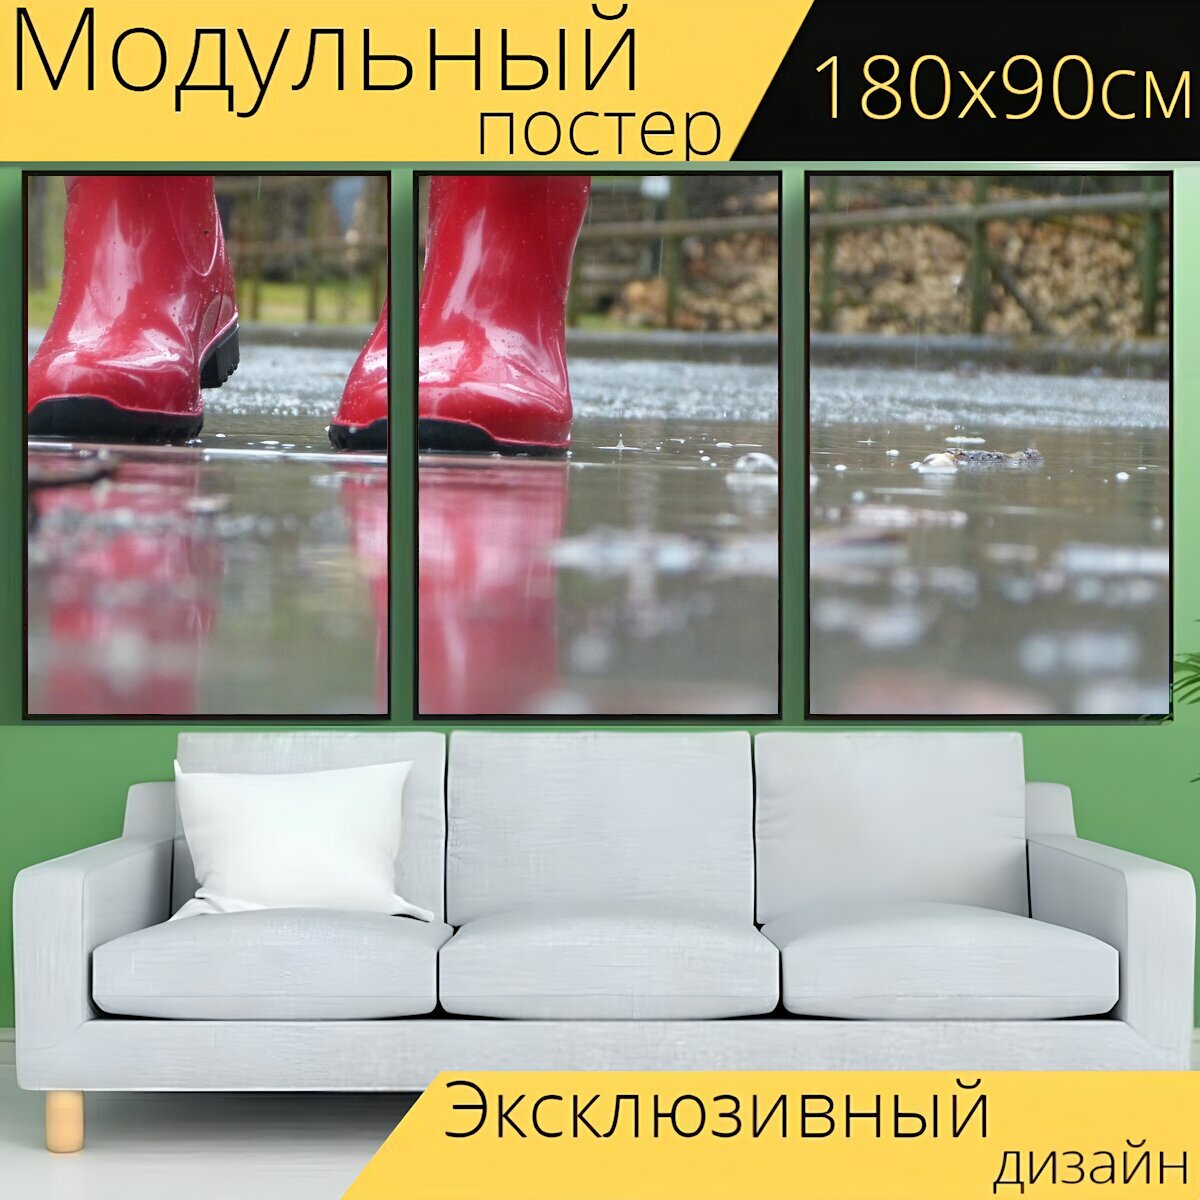 Модульный постер "Красные сапоги, капля дождя, резиновые сапоги" 180 x 90 см. для интерьера